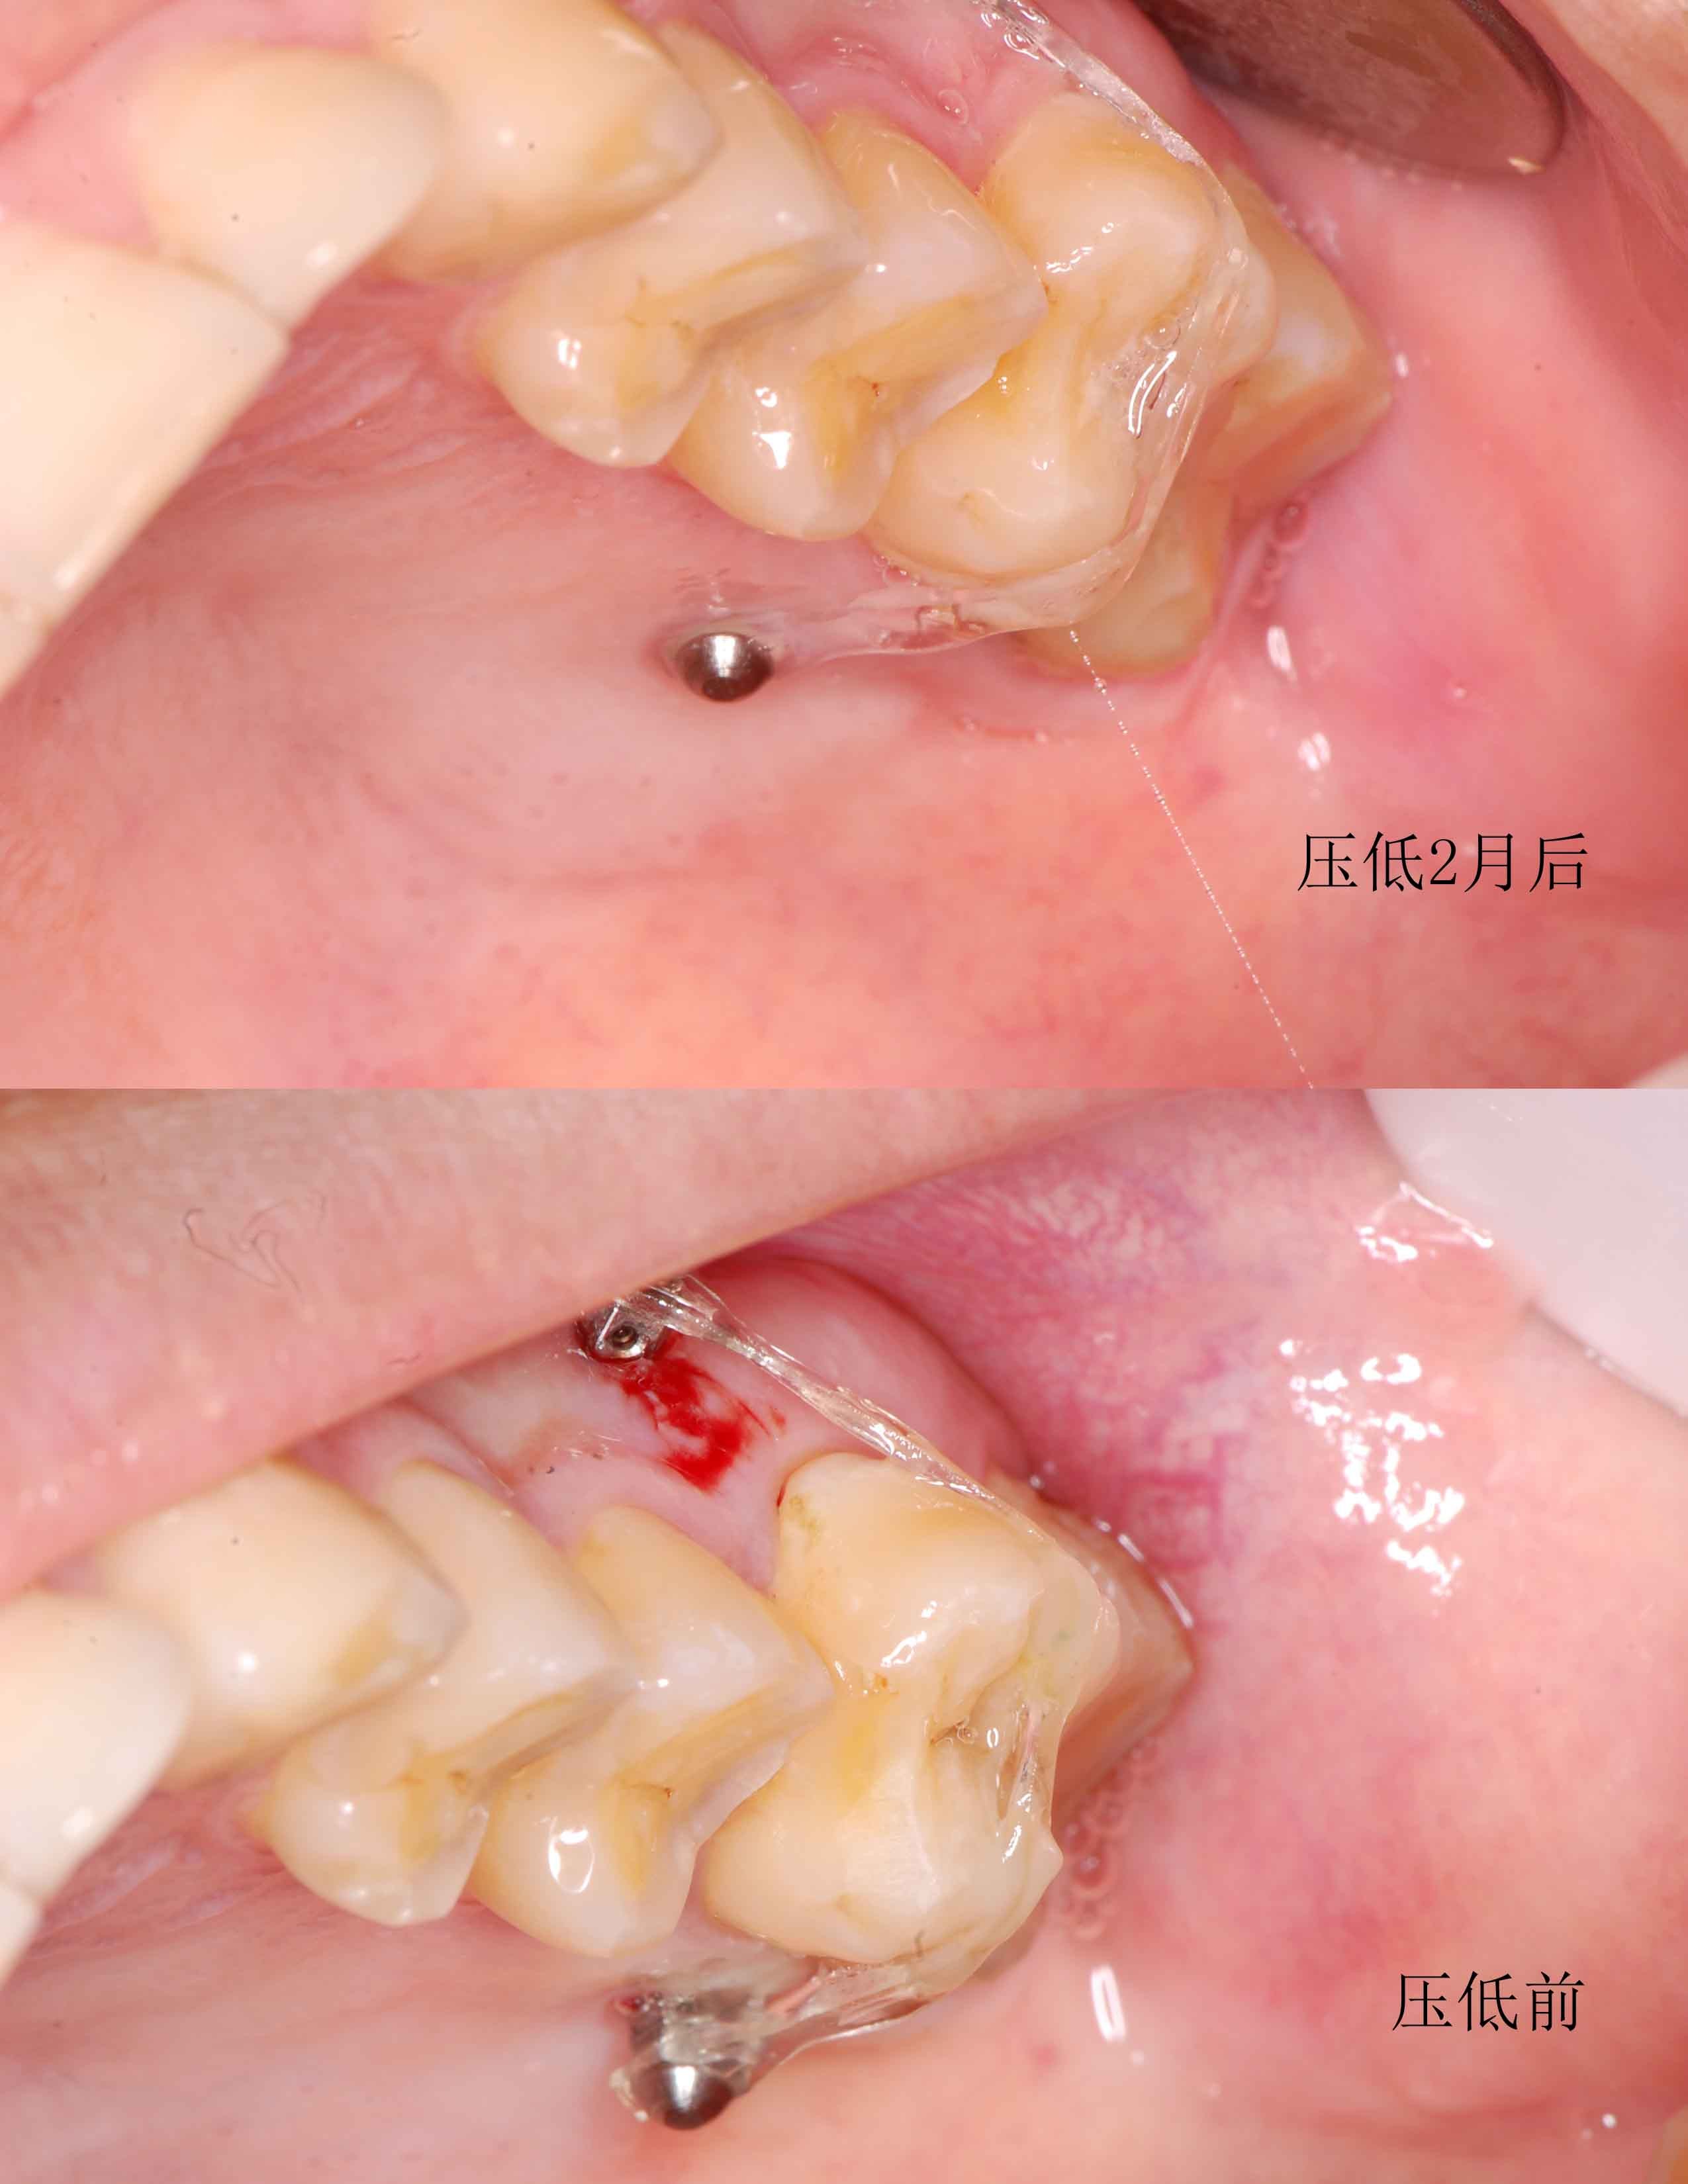 通过正畸支抗钉的方法来压低伸长的磨牙